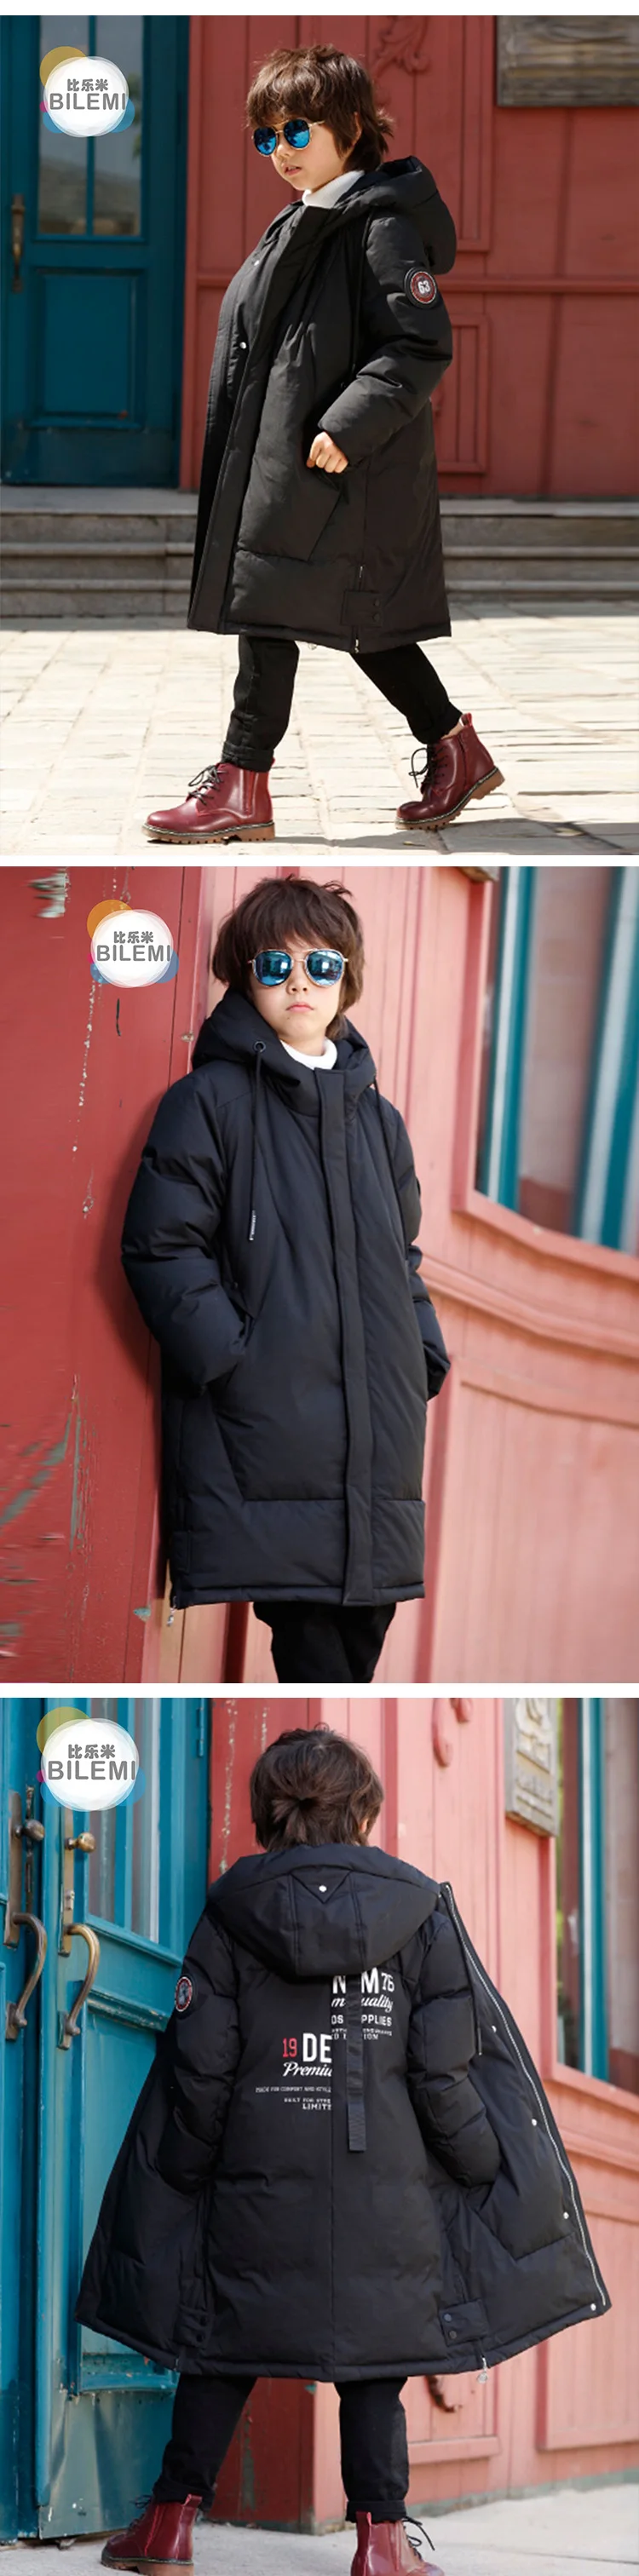 Bilemi/ветронепроницаемая пуховая водонепроницаемая куртка; распродажа; зимние детские весенние куртки